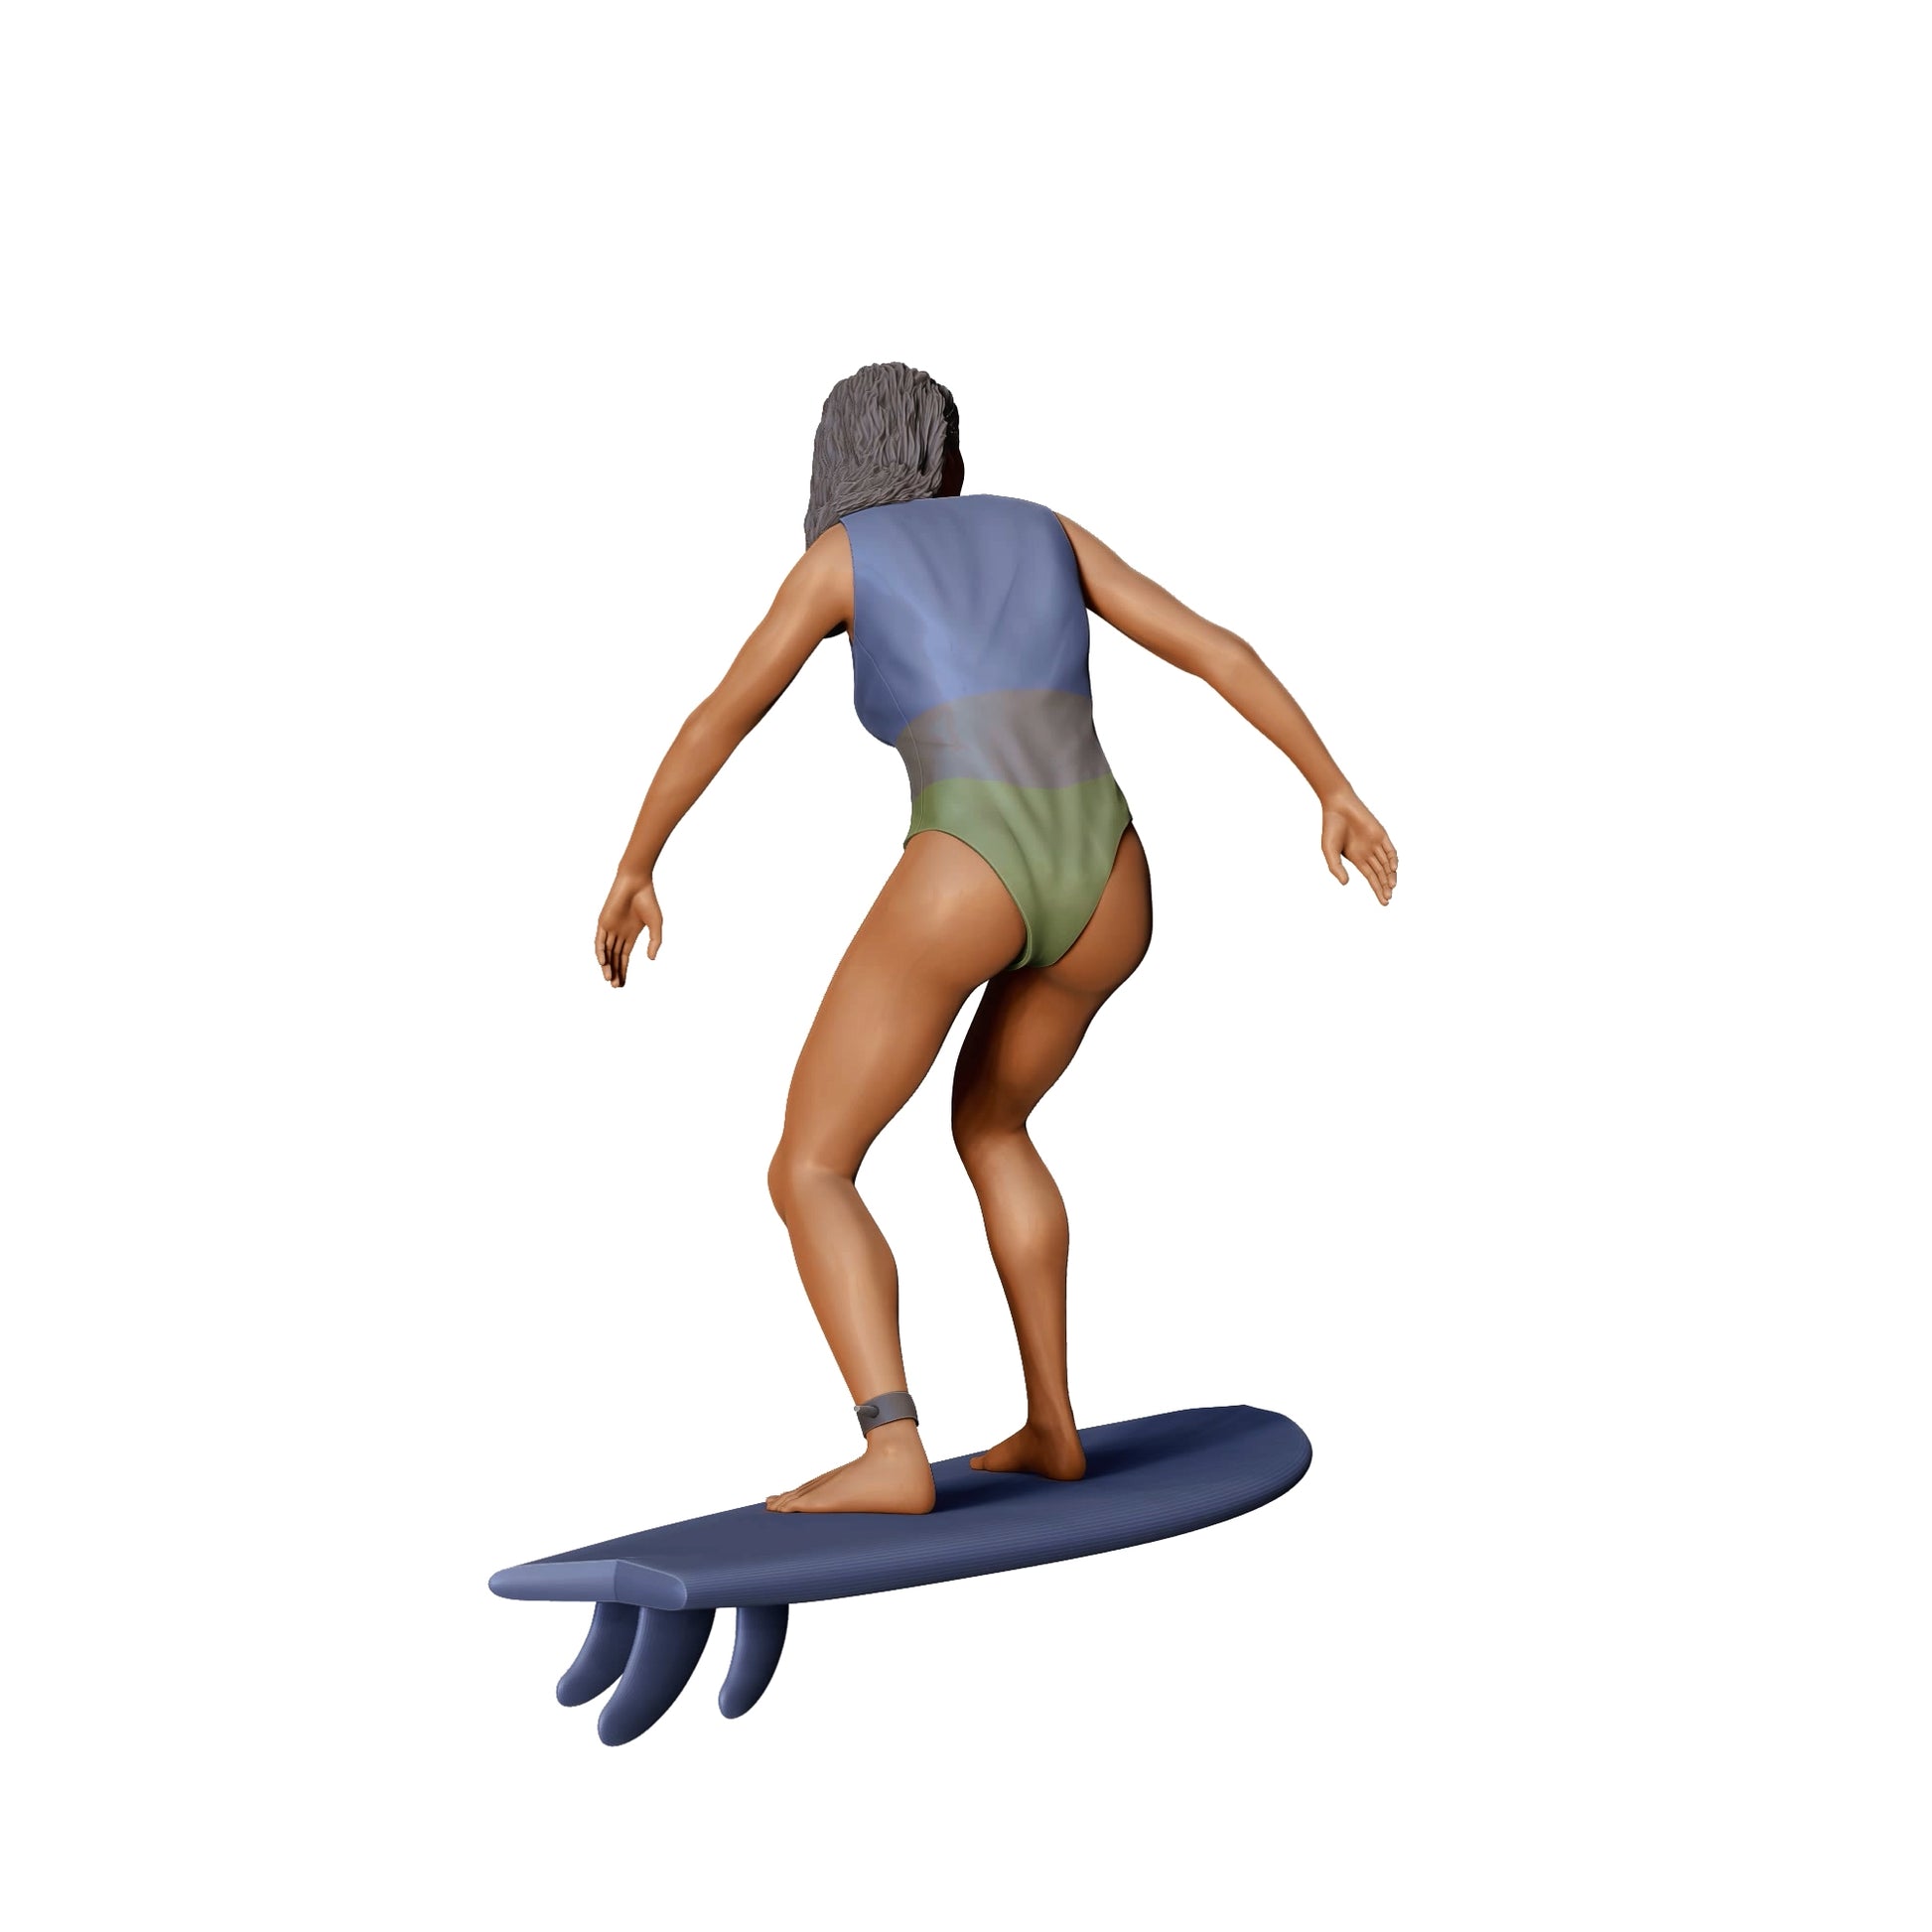 Produktfoto Diorama und Modellbau Miniatur Figur: Wellenreiterin: Surferin auf Surfbrett am Meer